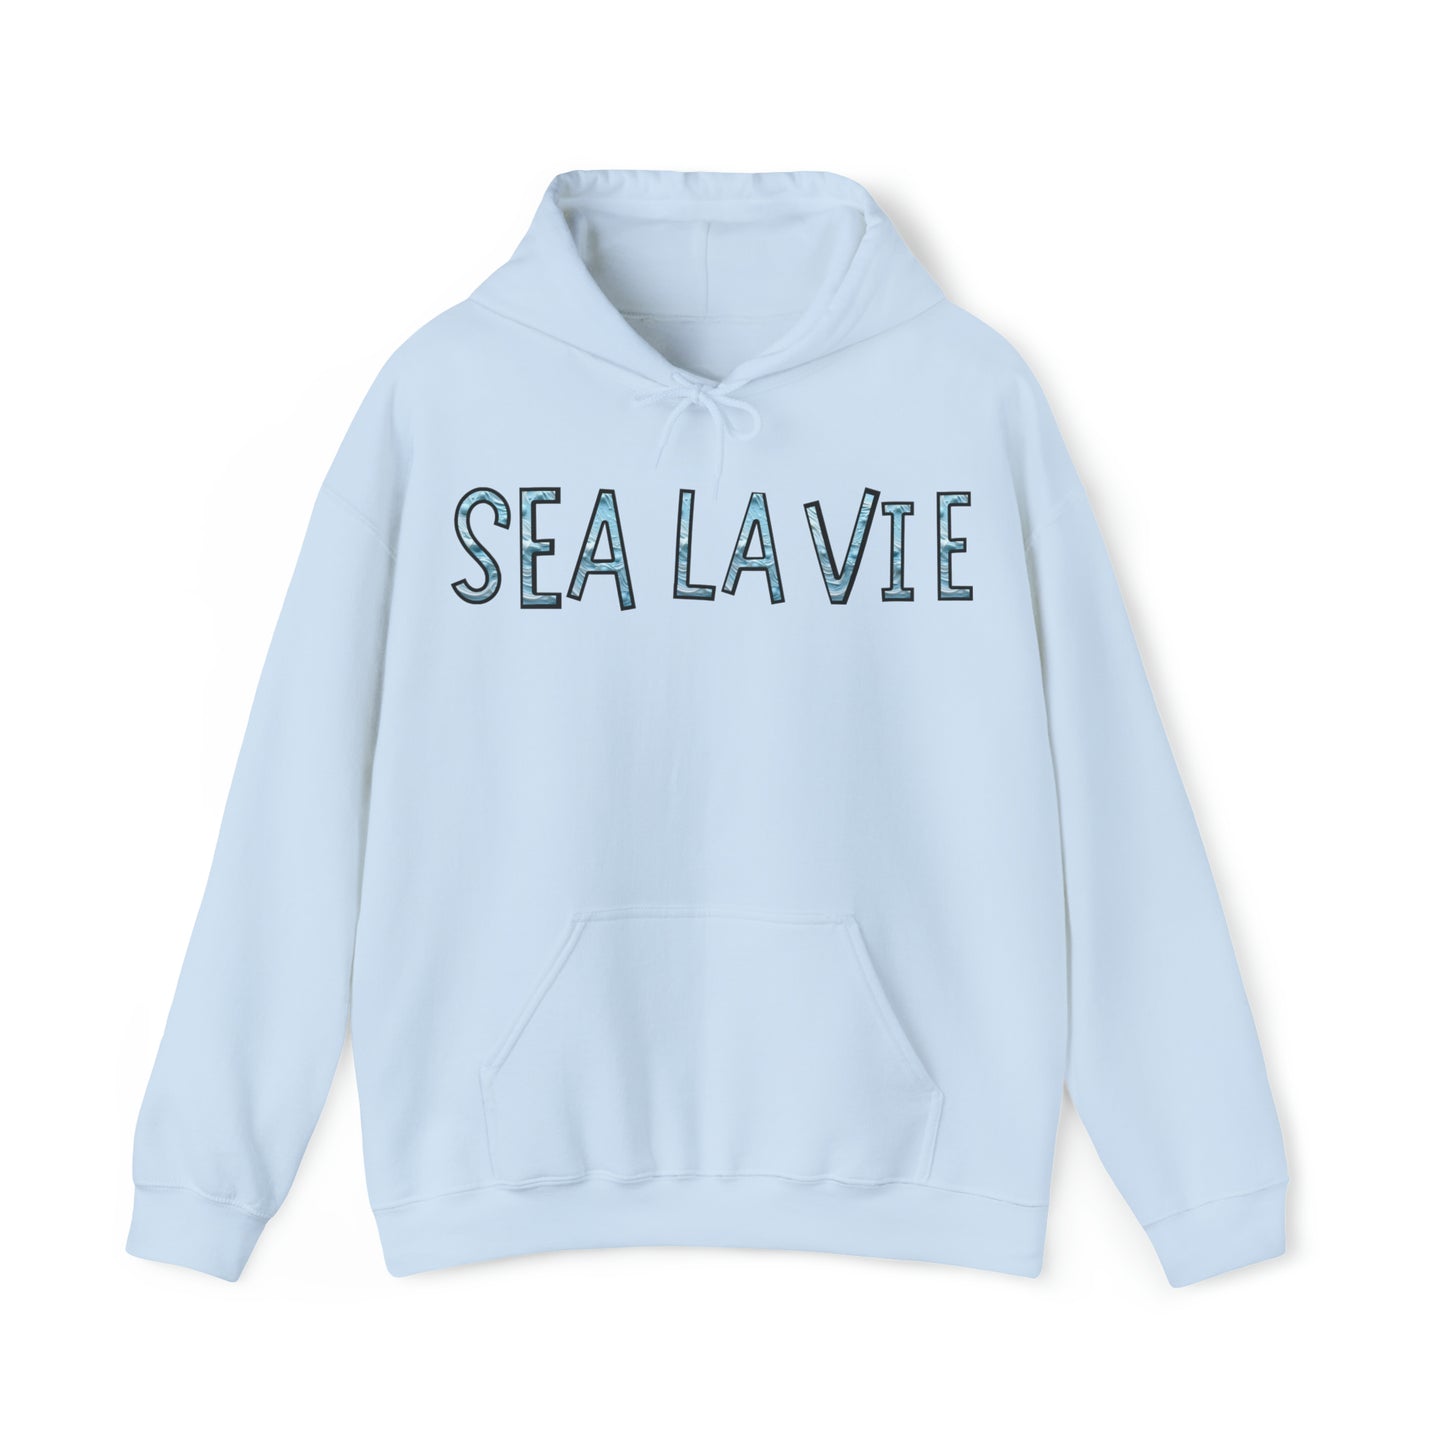 Beach Sea La Vie Hoodie Beach Ocean Lovers Print Sweatshirt For Women Gift For Men